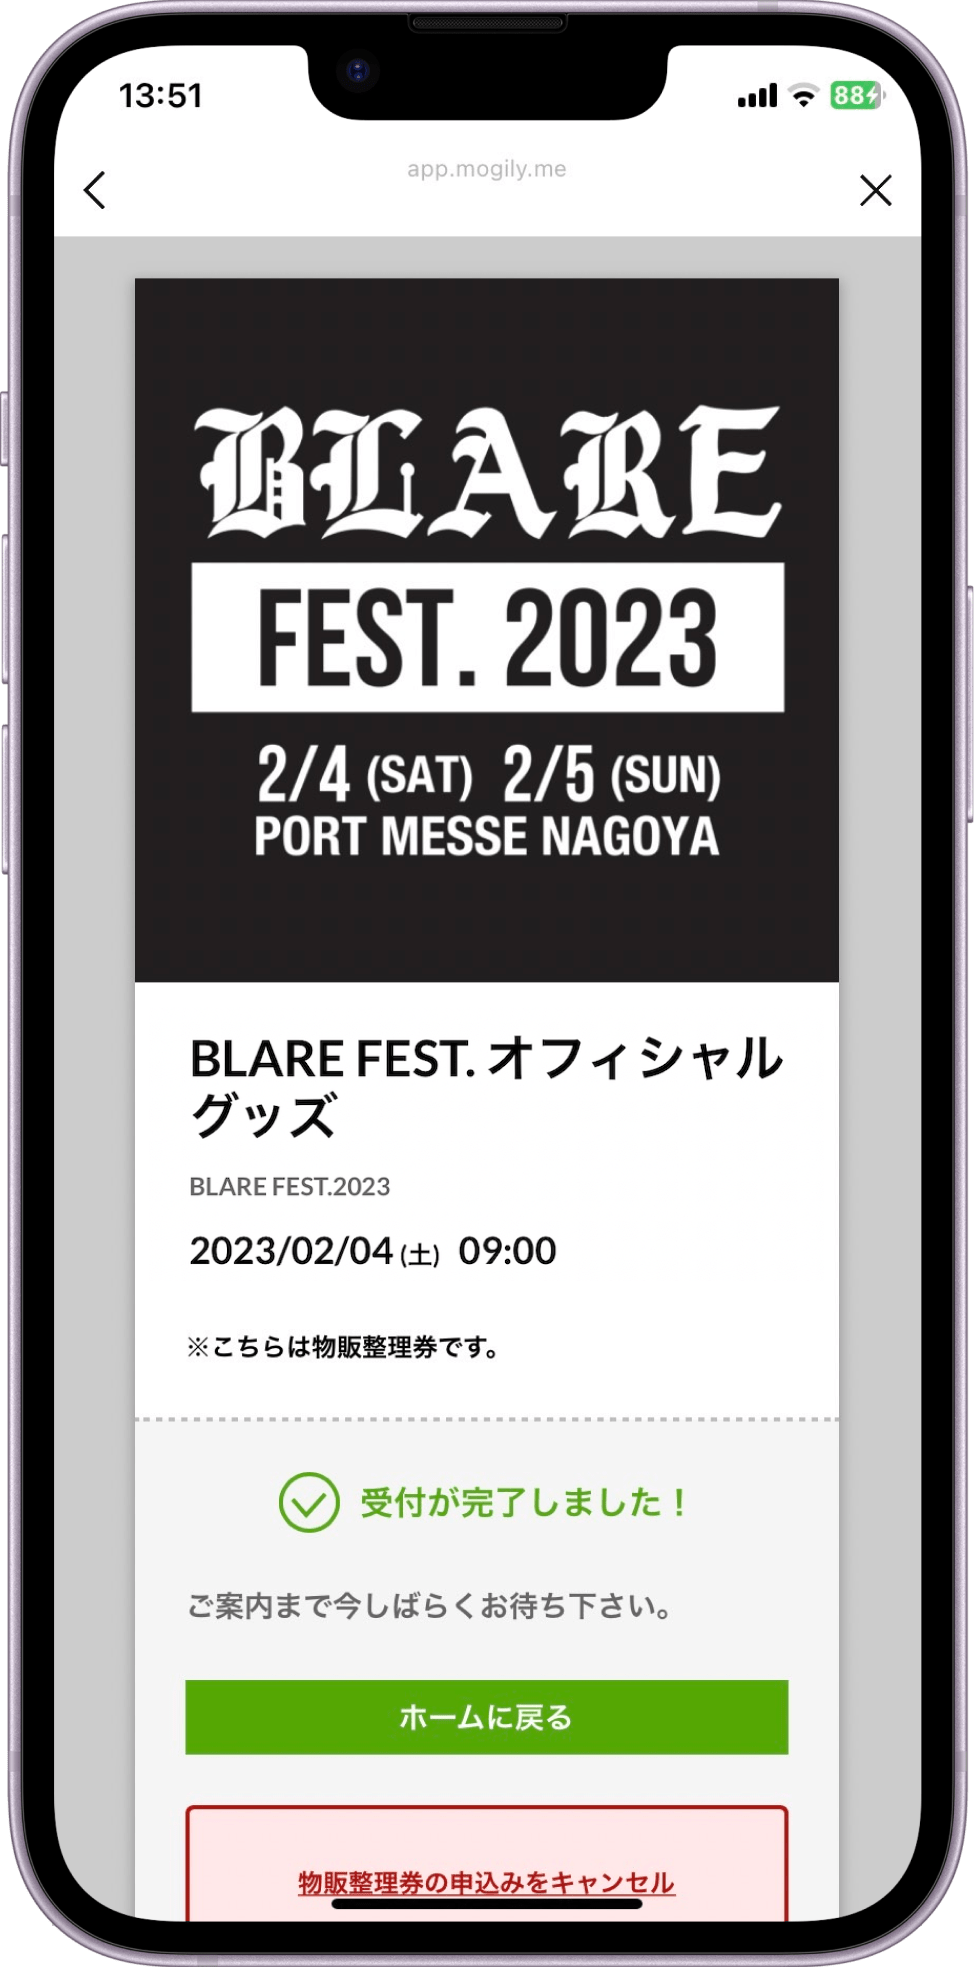 BLARE FEST 2023